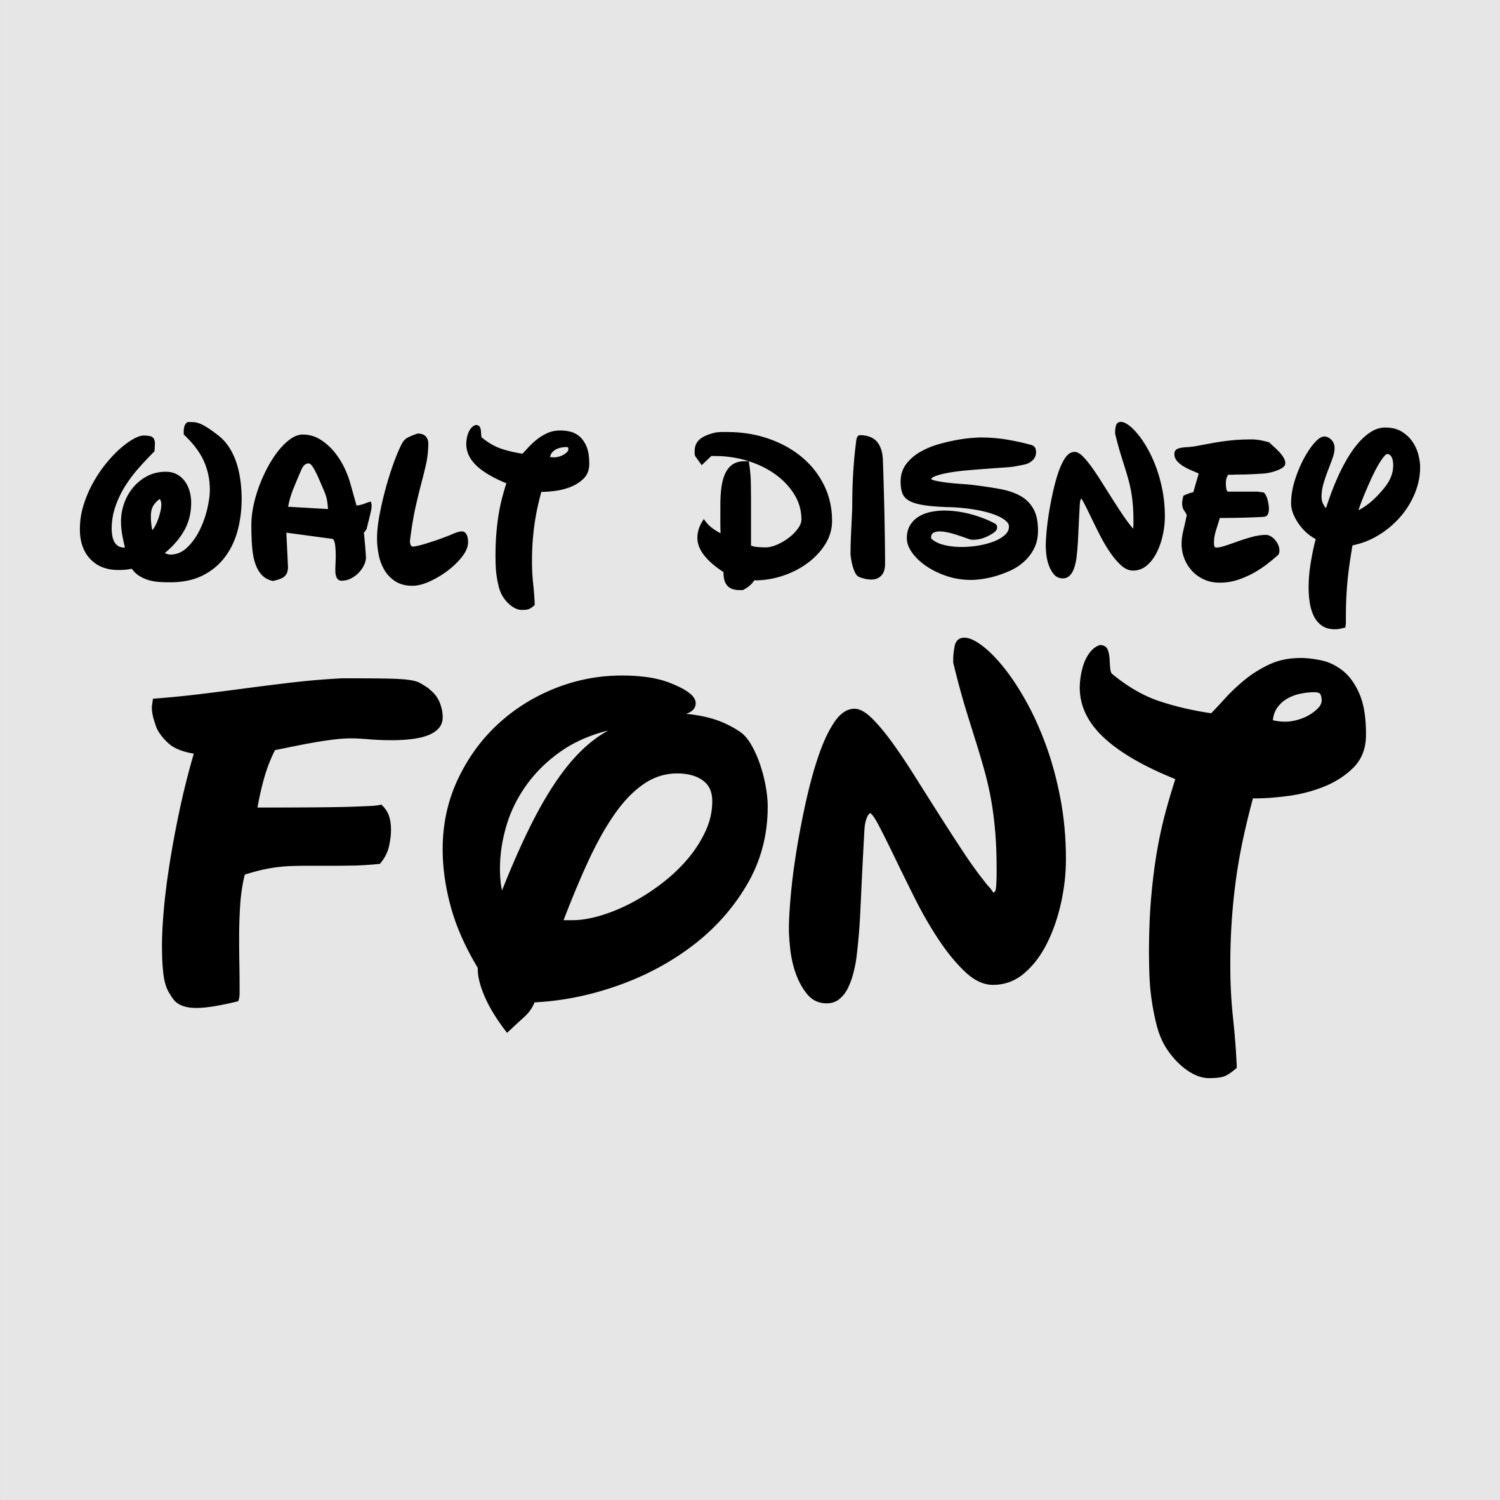 Disney Font For Cricut - www.inf-inet.com